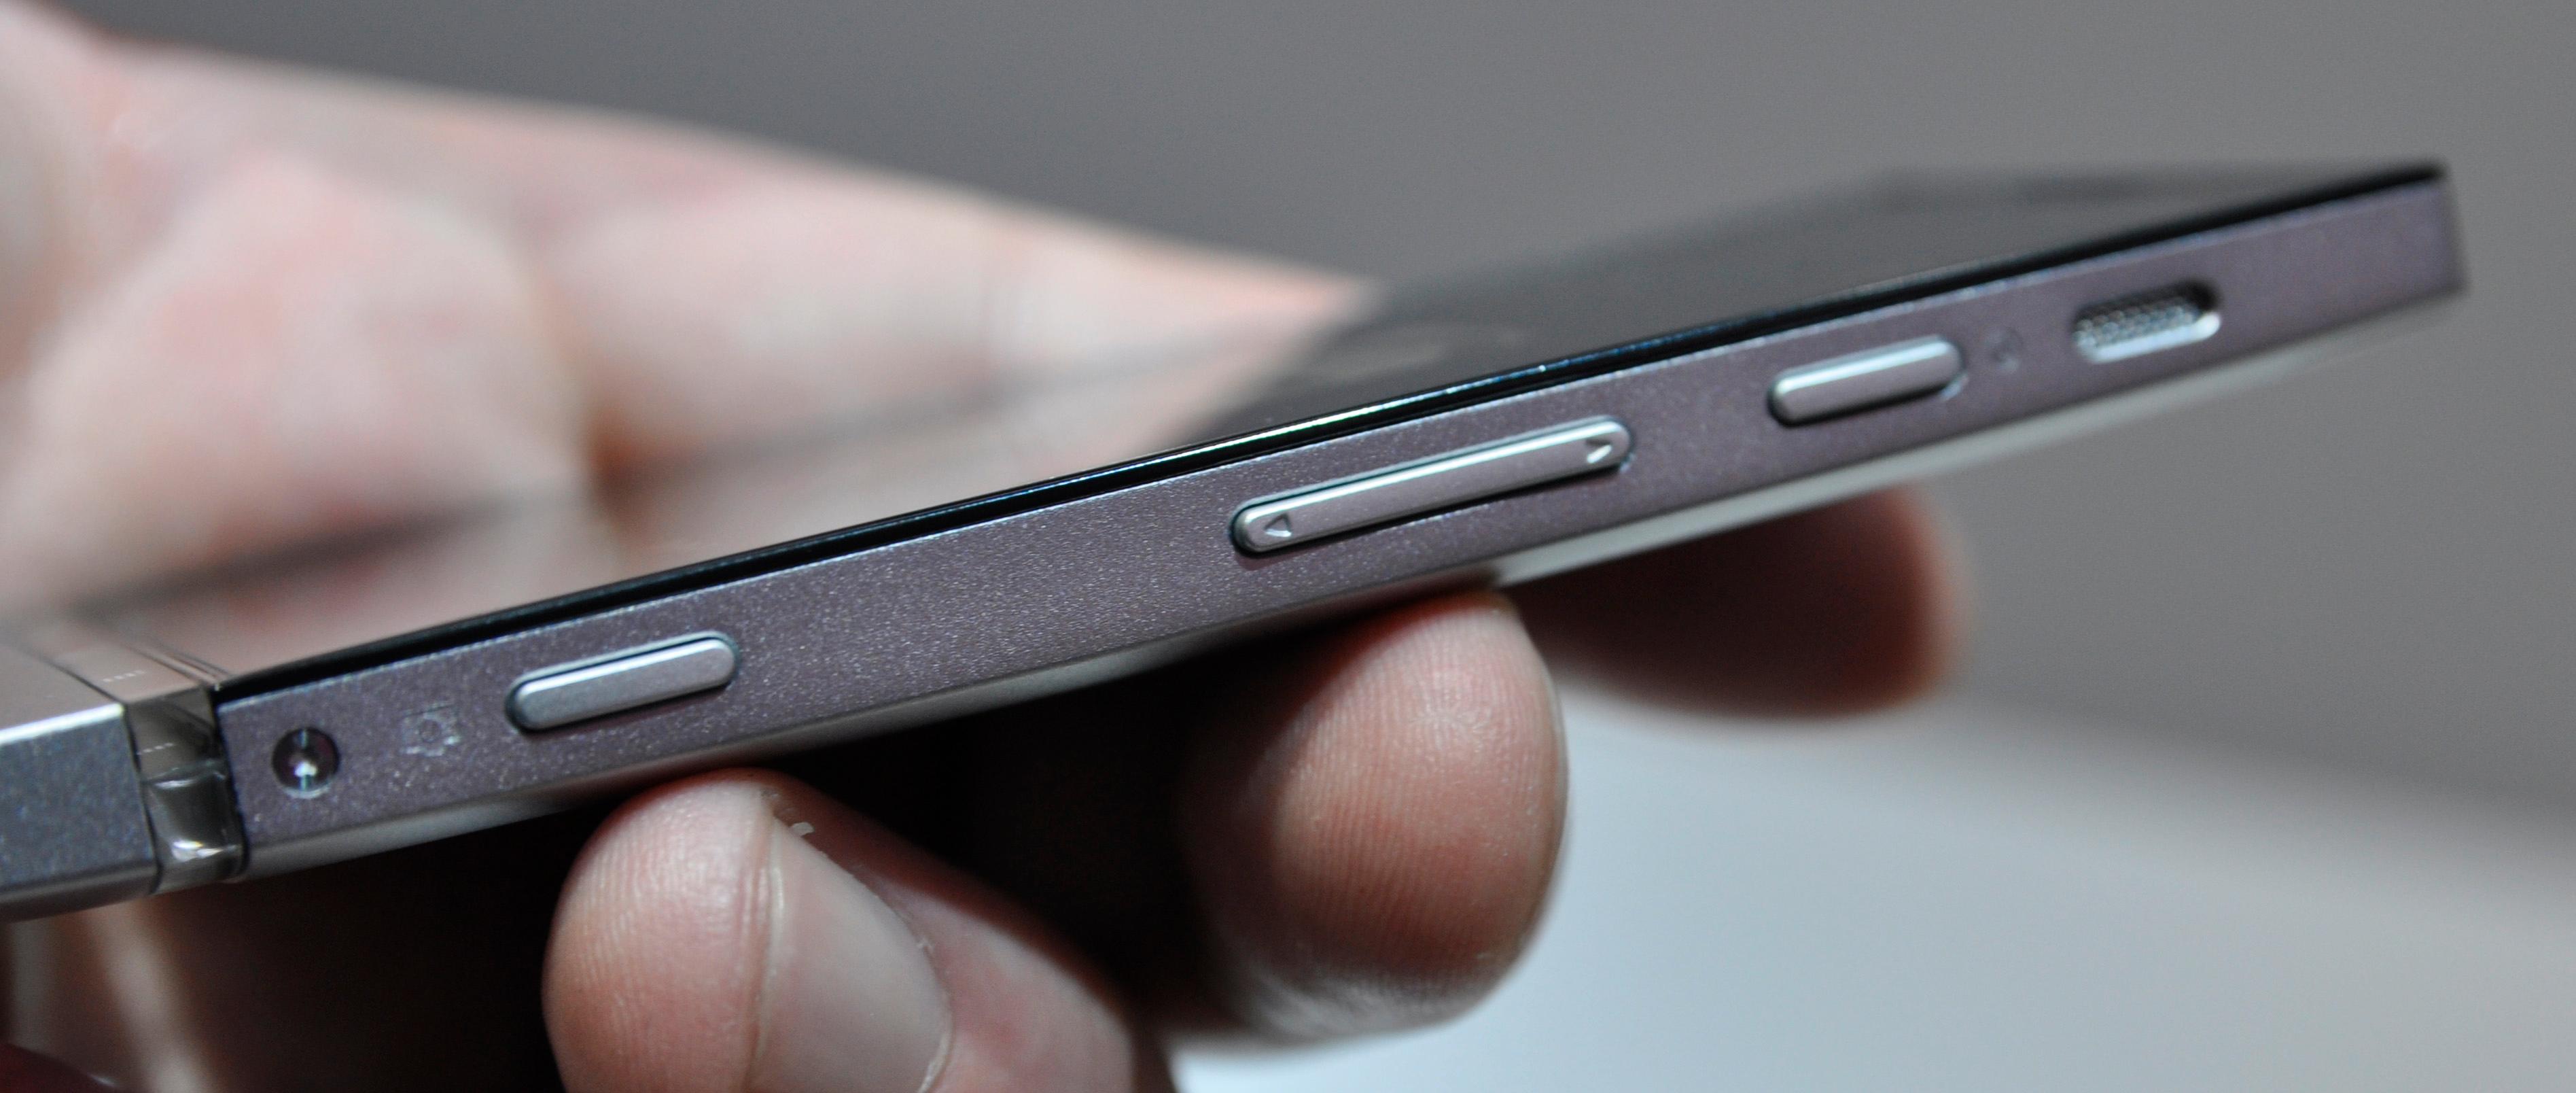 Xperia P er ikke blant de aller tynneste smarttelefonene, men den er heller ikke voldsomt tykk med litt over en centimeter på strømpelesten.